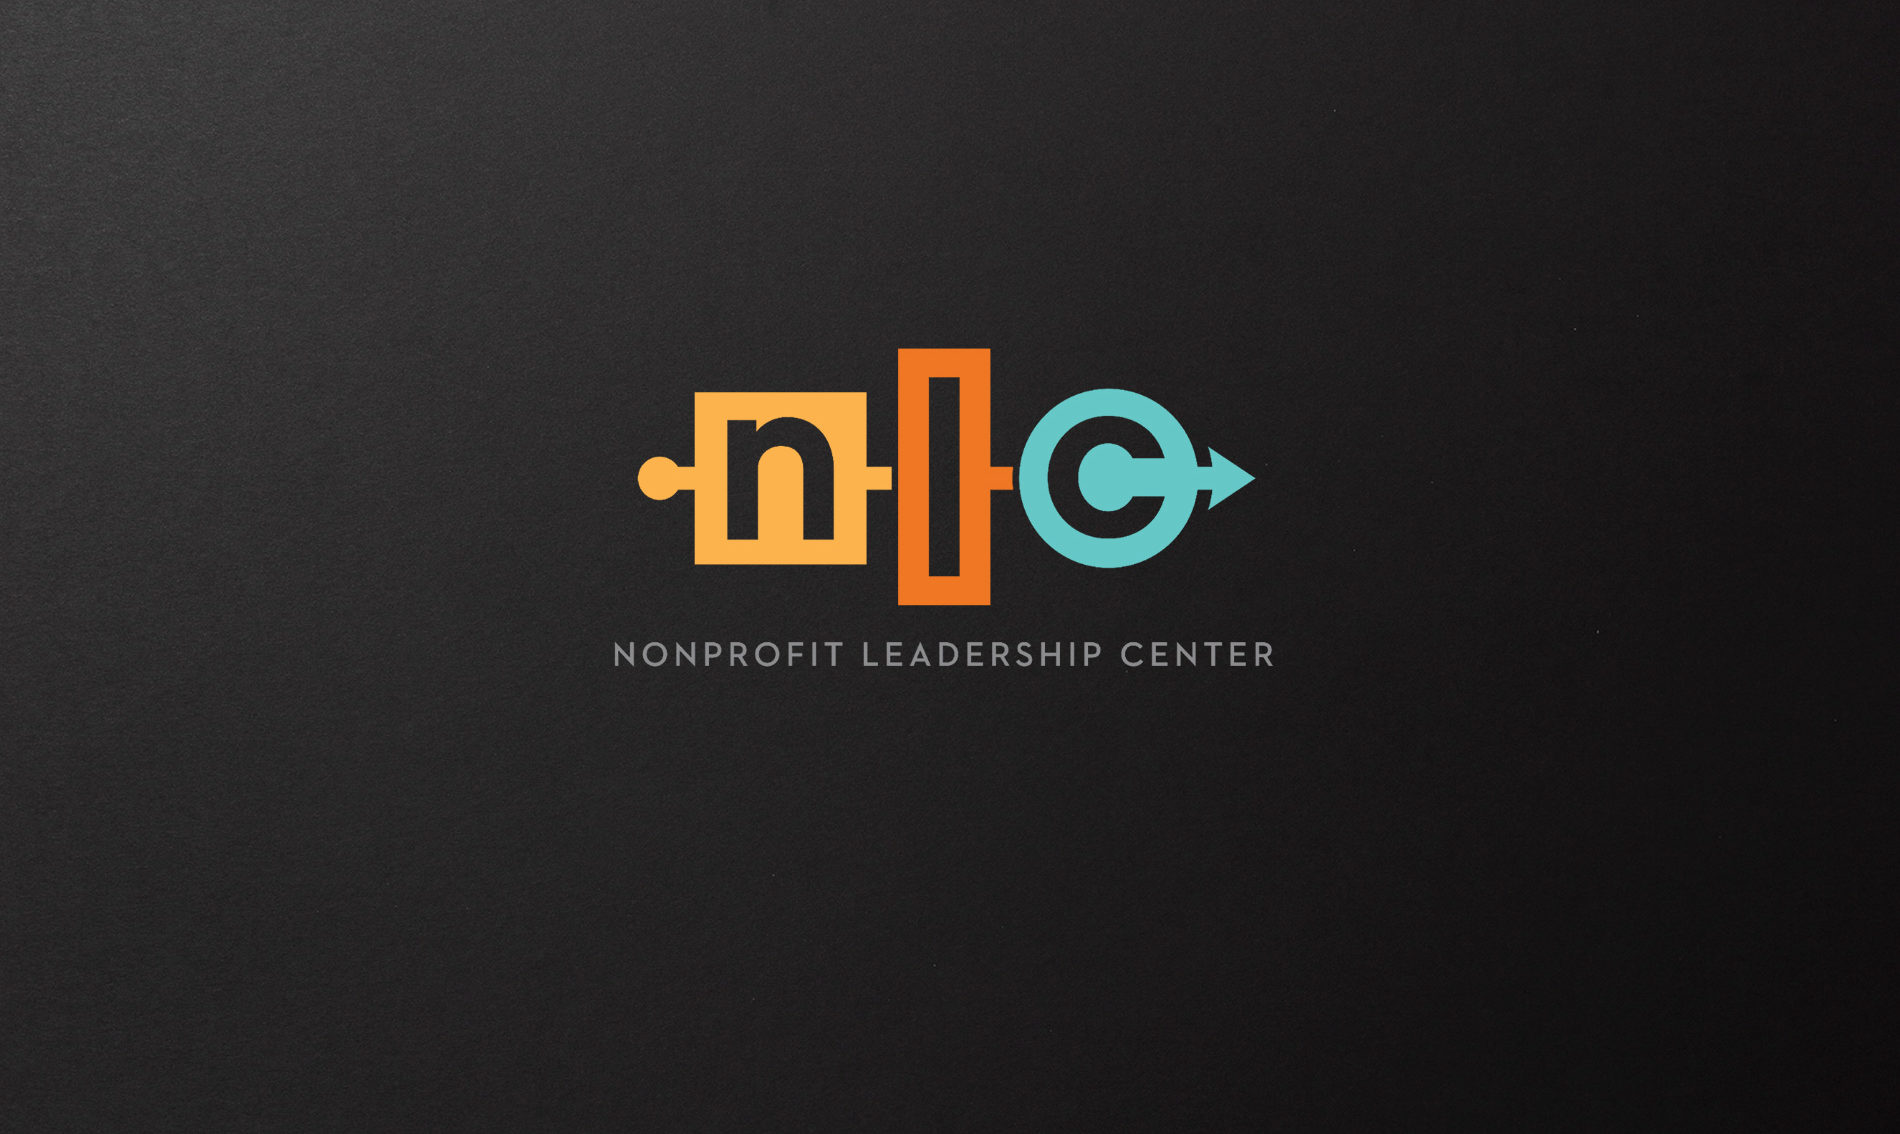 NLC logo on dark background